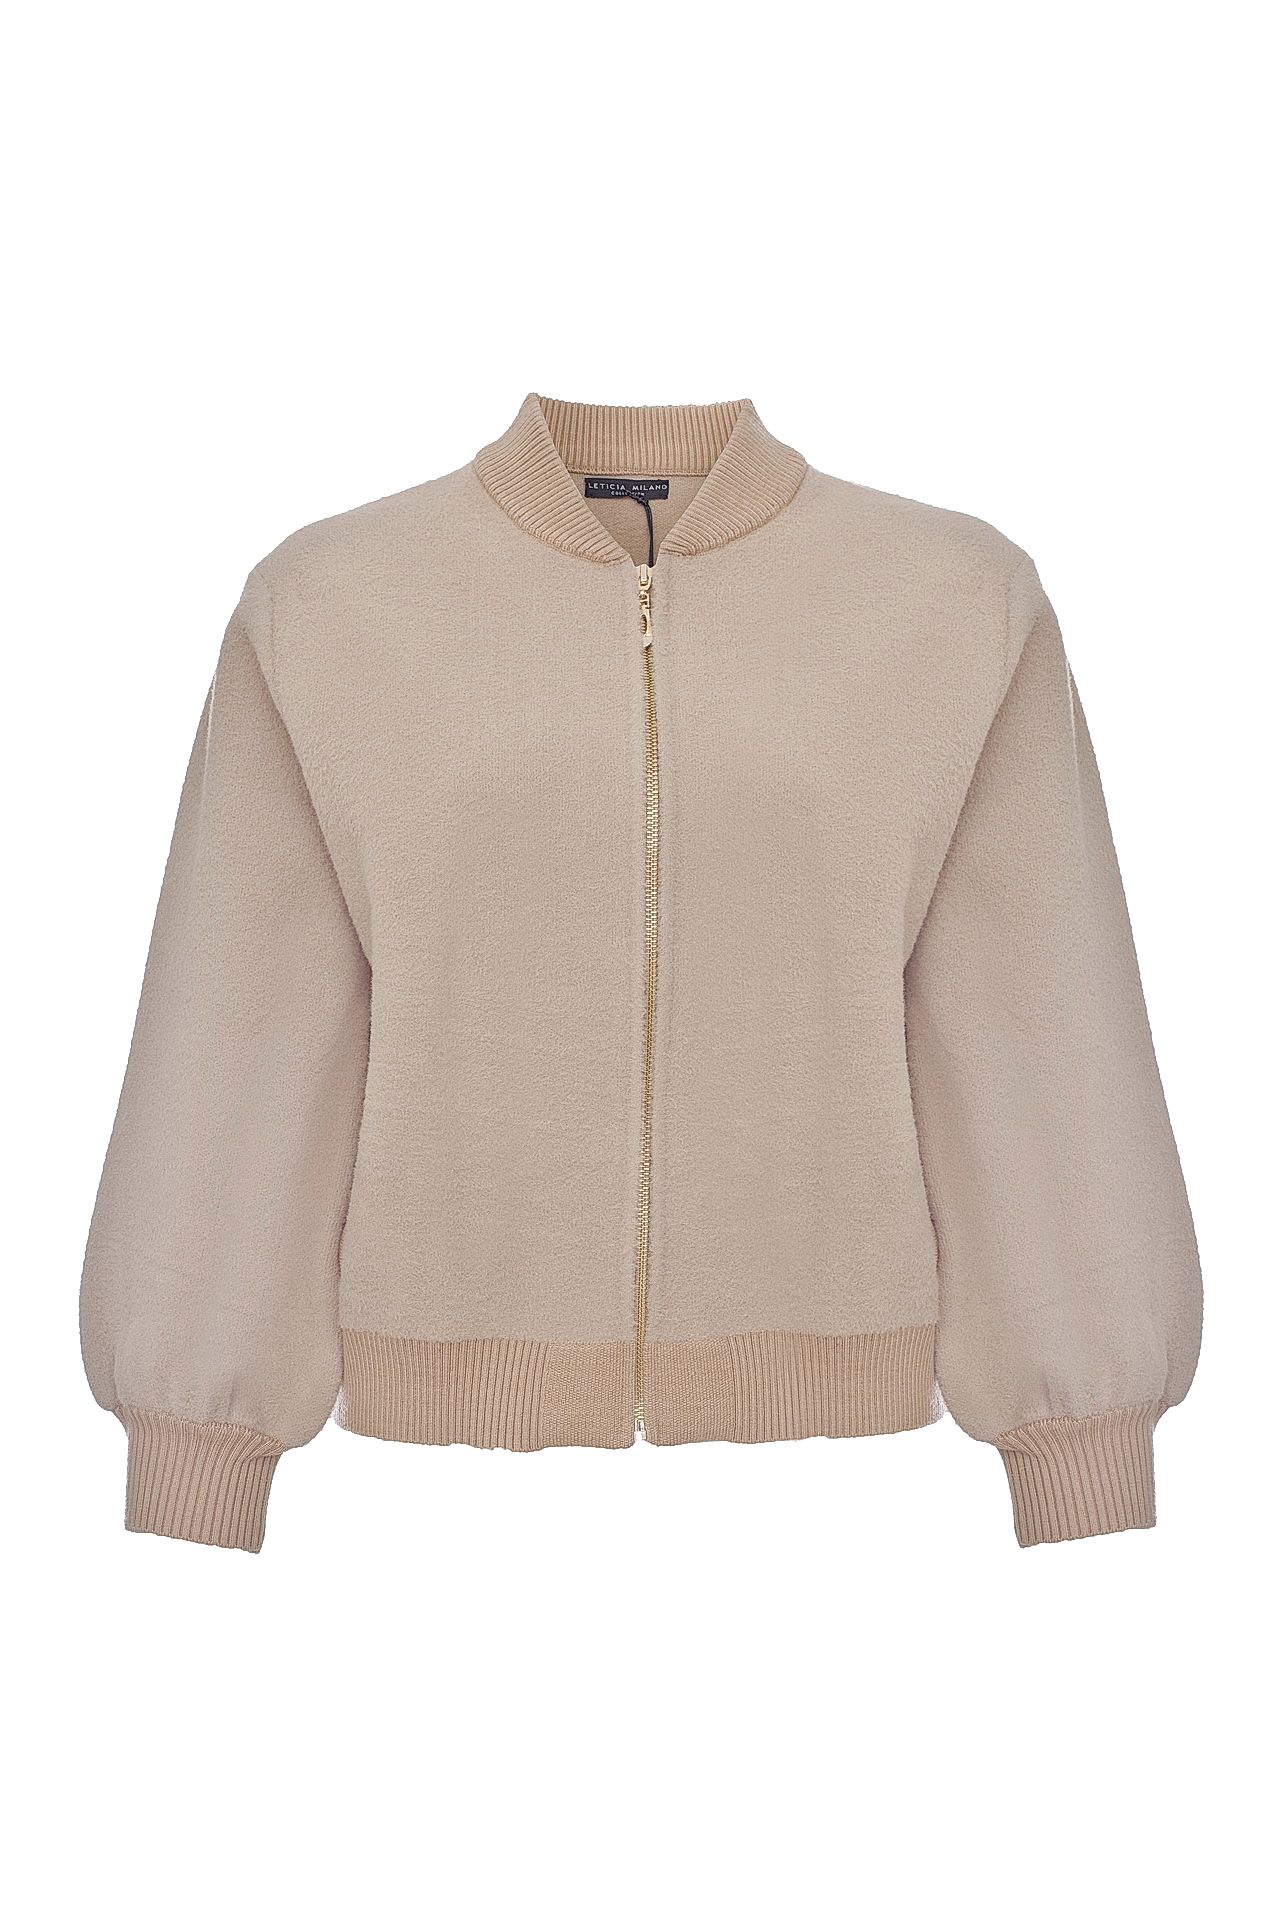 Одежда женская Куртка LETICIA MILANO (MG15120T27/17.2). Купить за 5530 руб.